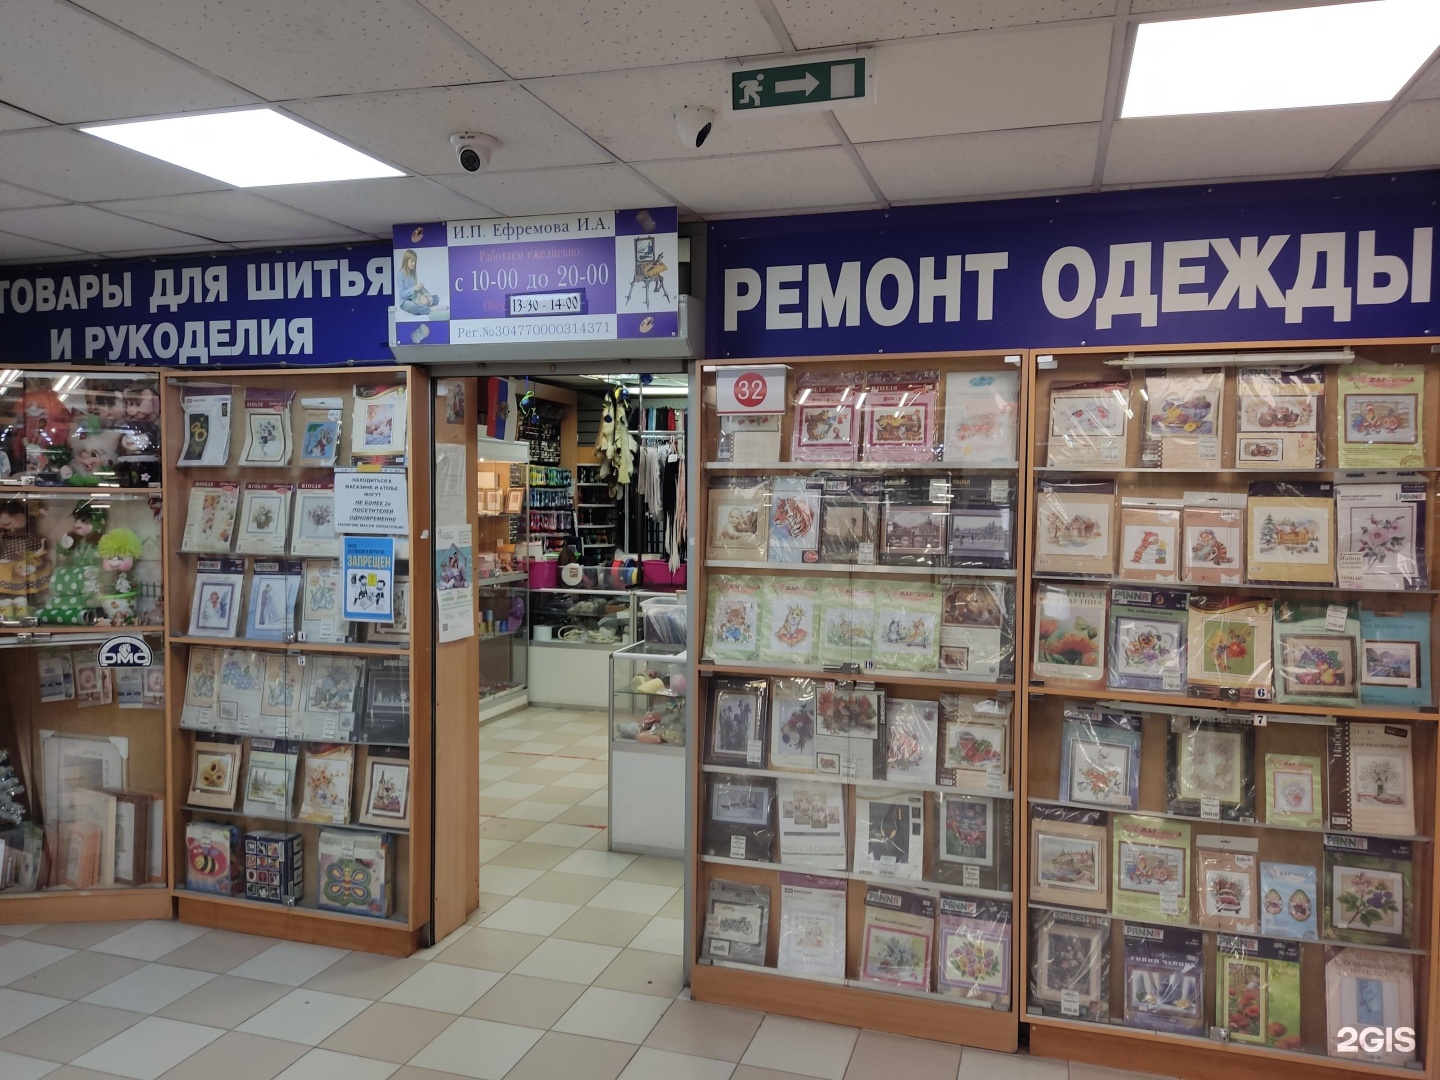 Магазин товаров для шитья и рукоделия в Москве